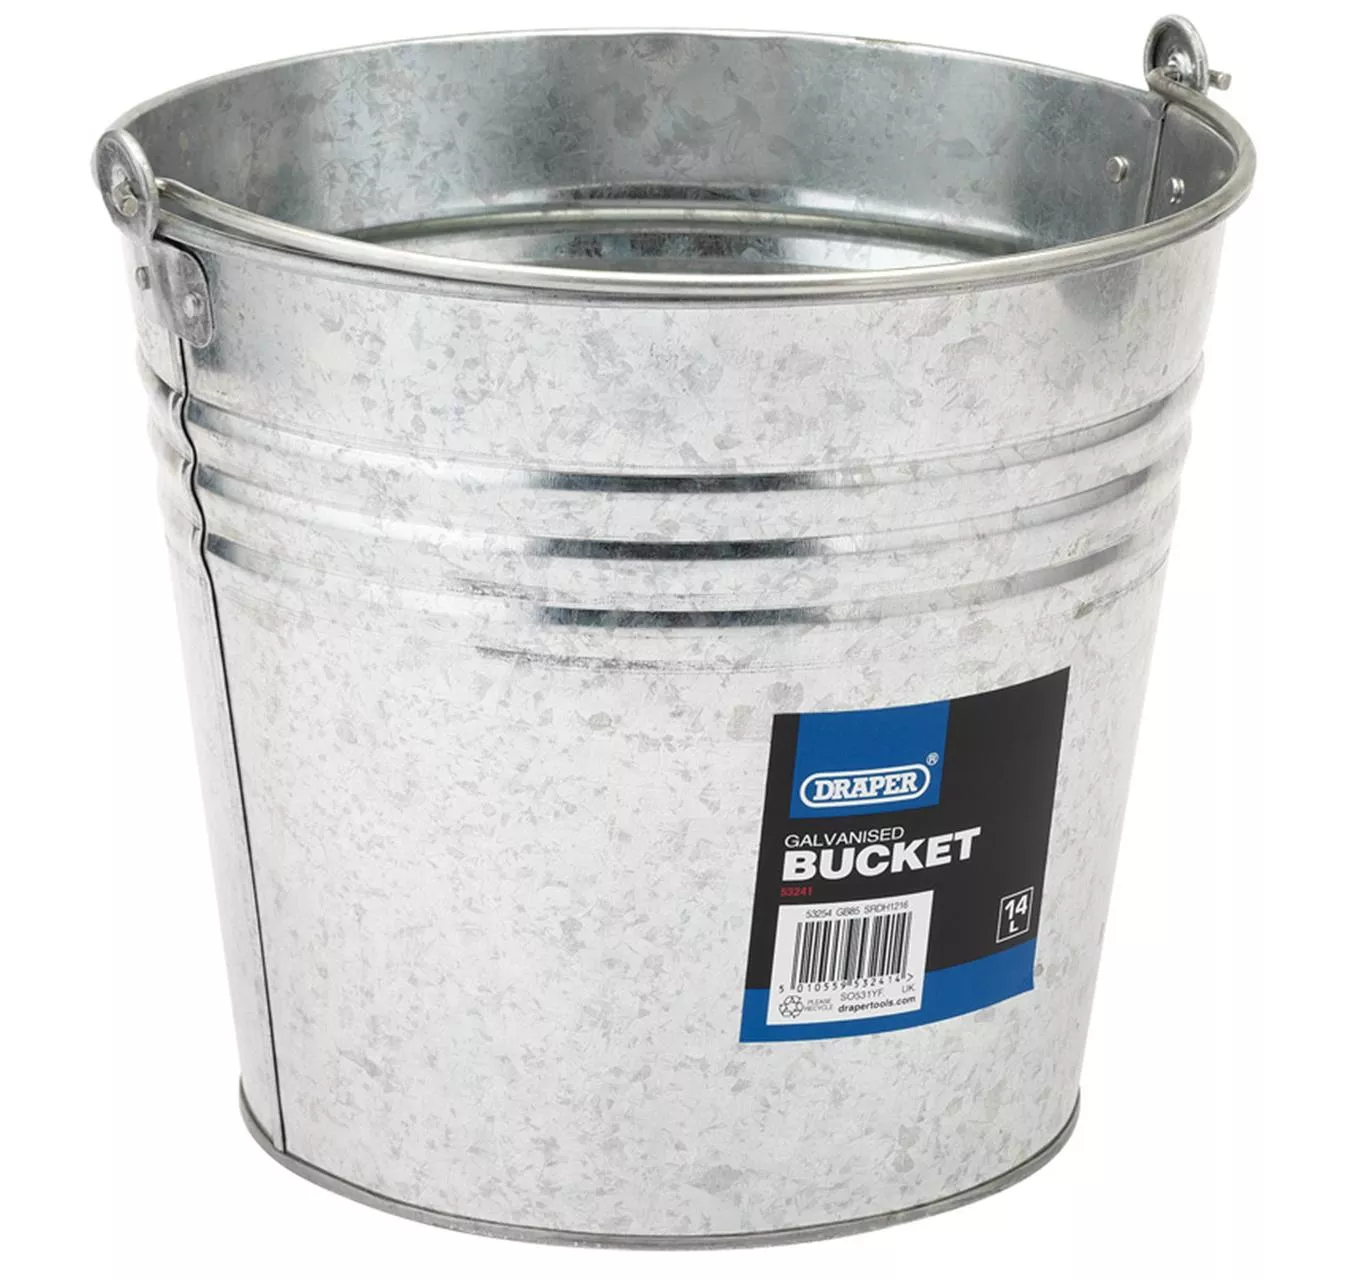 Galvanised Bucket 14L